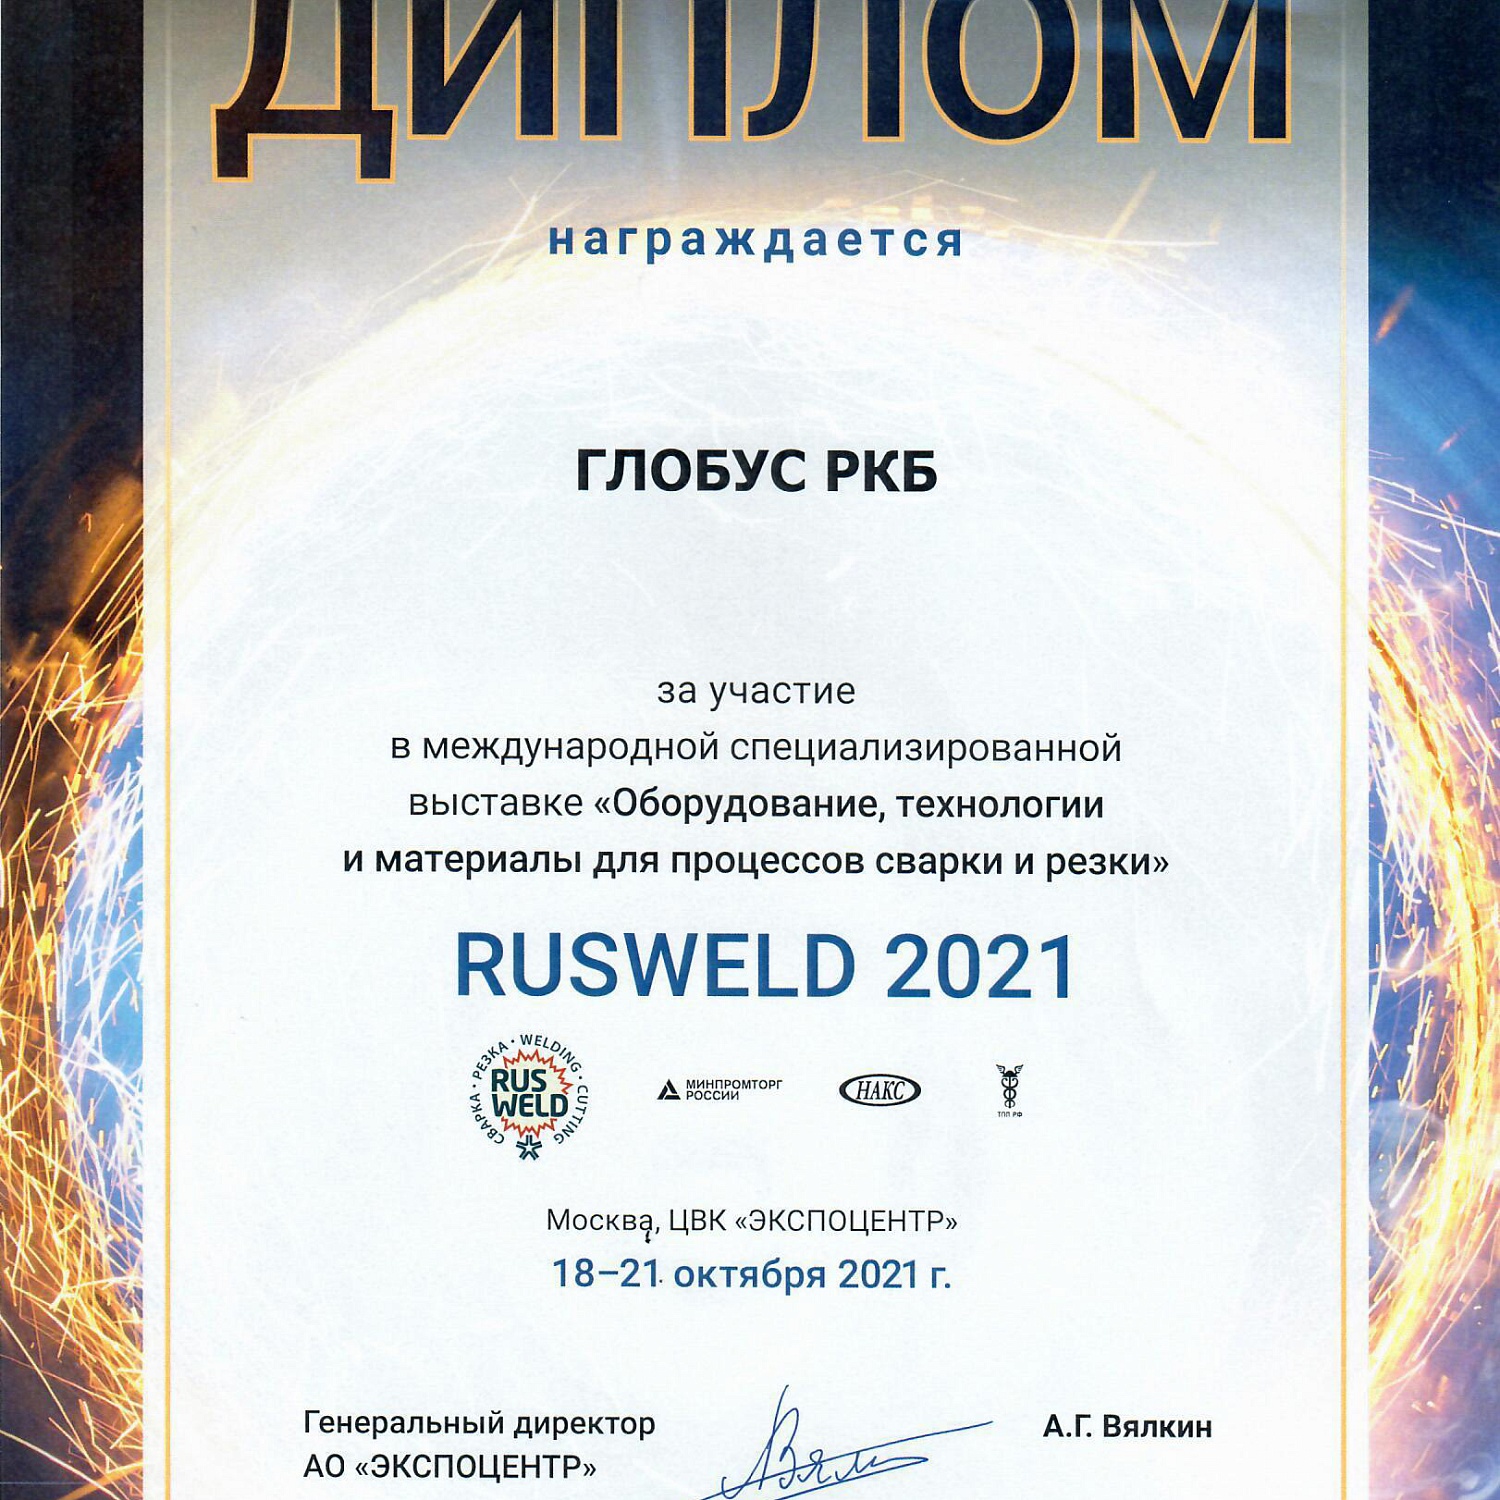 Международная выставка Rusweld 2021 с 18 по 21 октября 2021